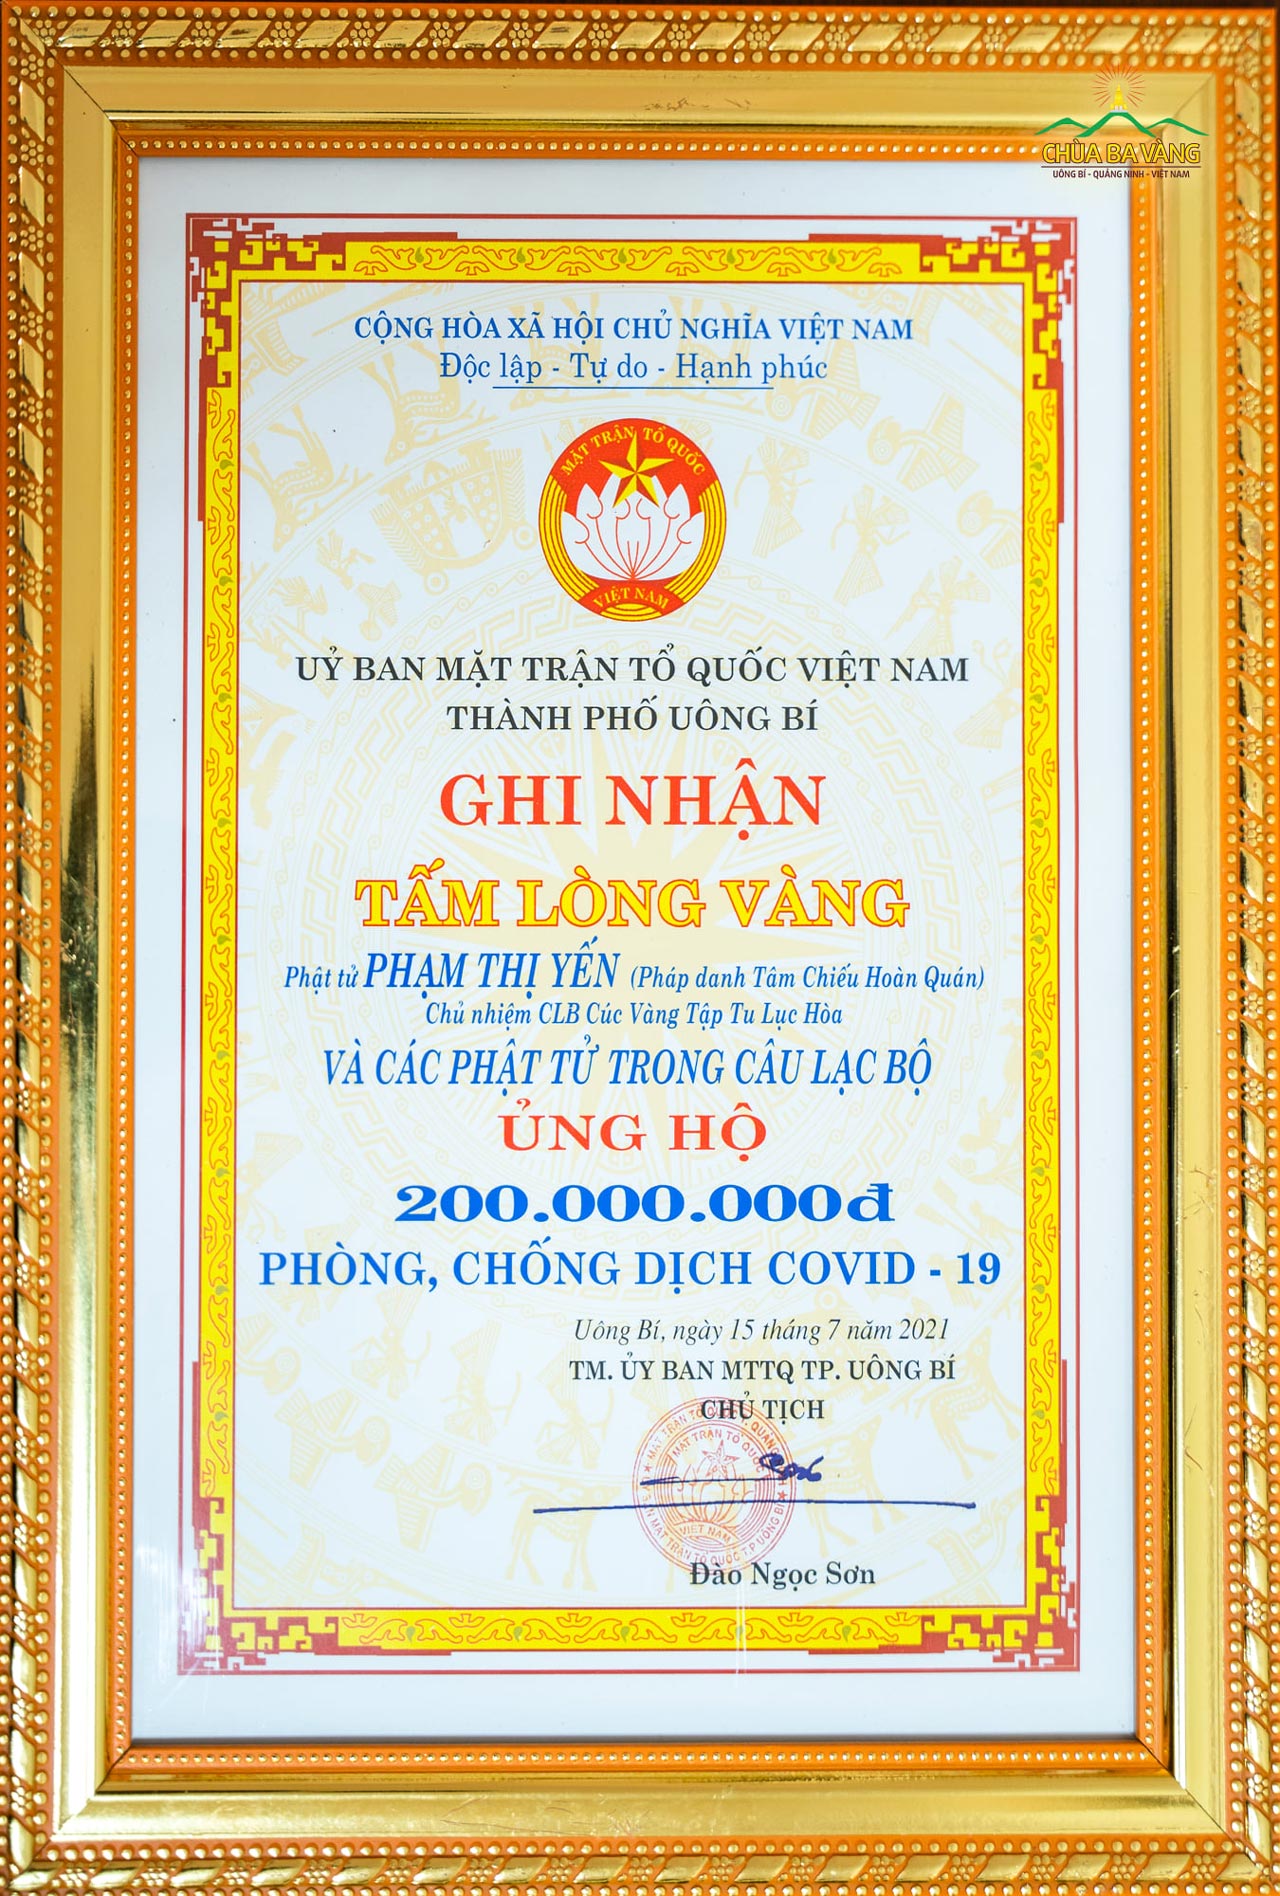 Được sự khuyến khích trên Sư Phụ, Câu lạc bộ Cúc Vàng - chùa Ba Vàng đã chung tay ủng hộ 200 triệu đồng cho công tác phòng, chống dịch  